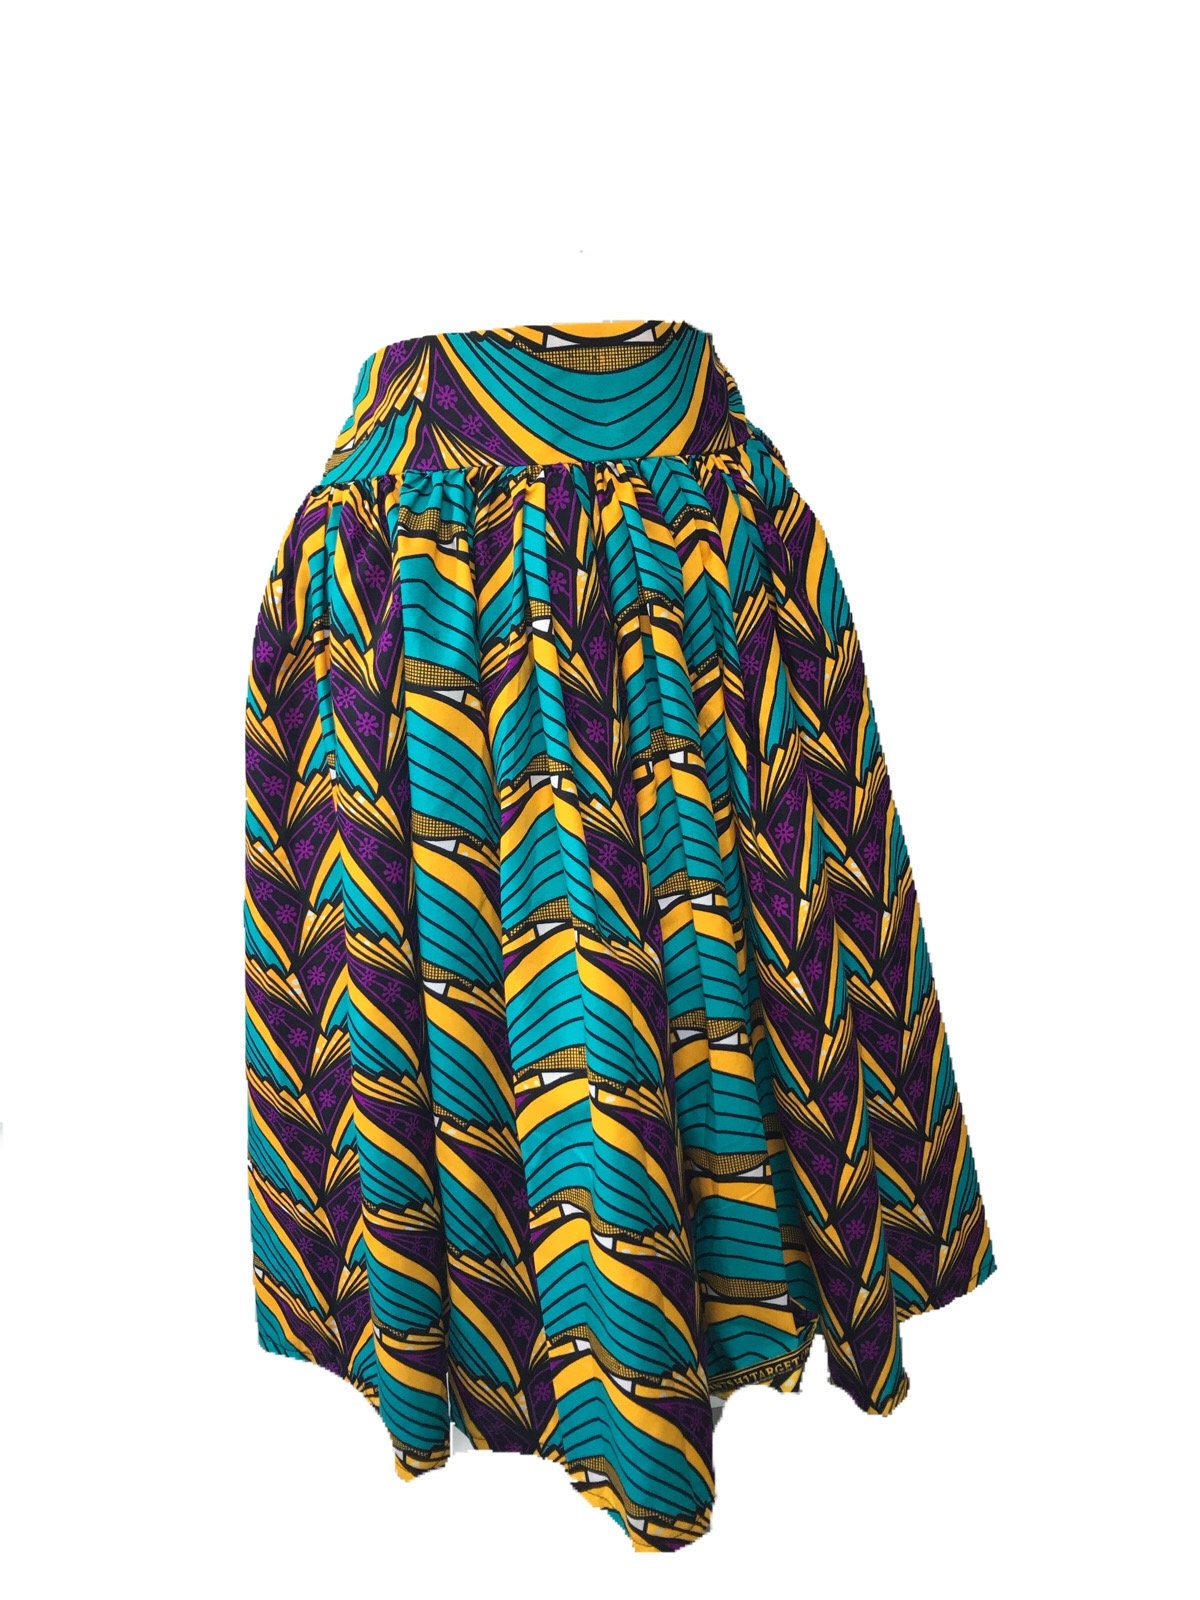 African print skirt best fabric